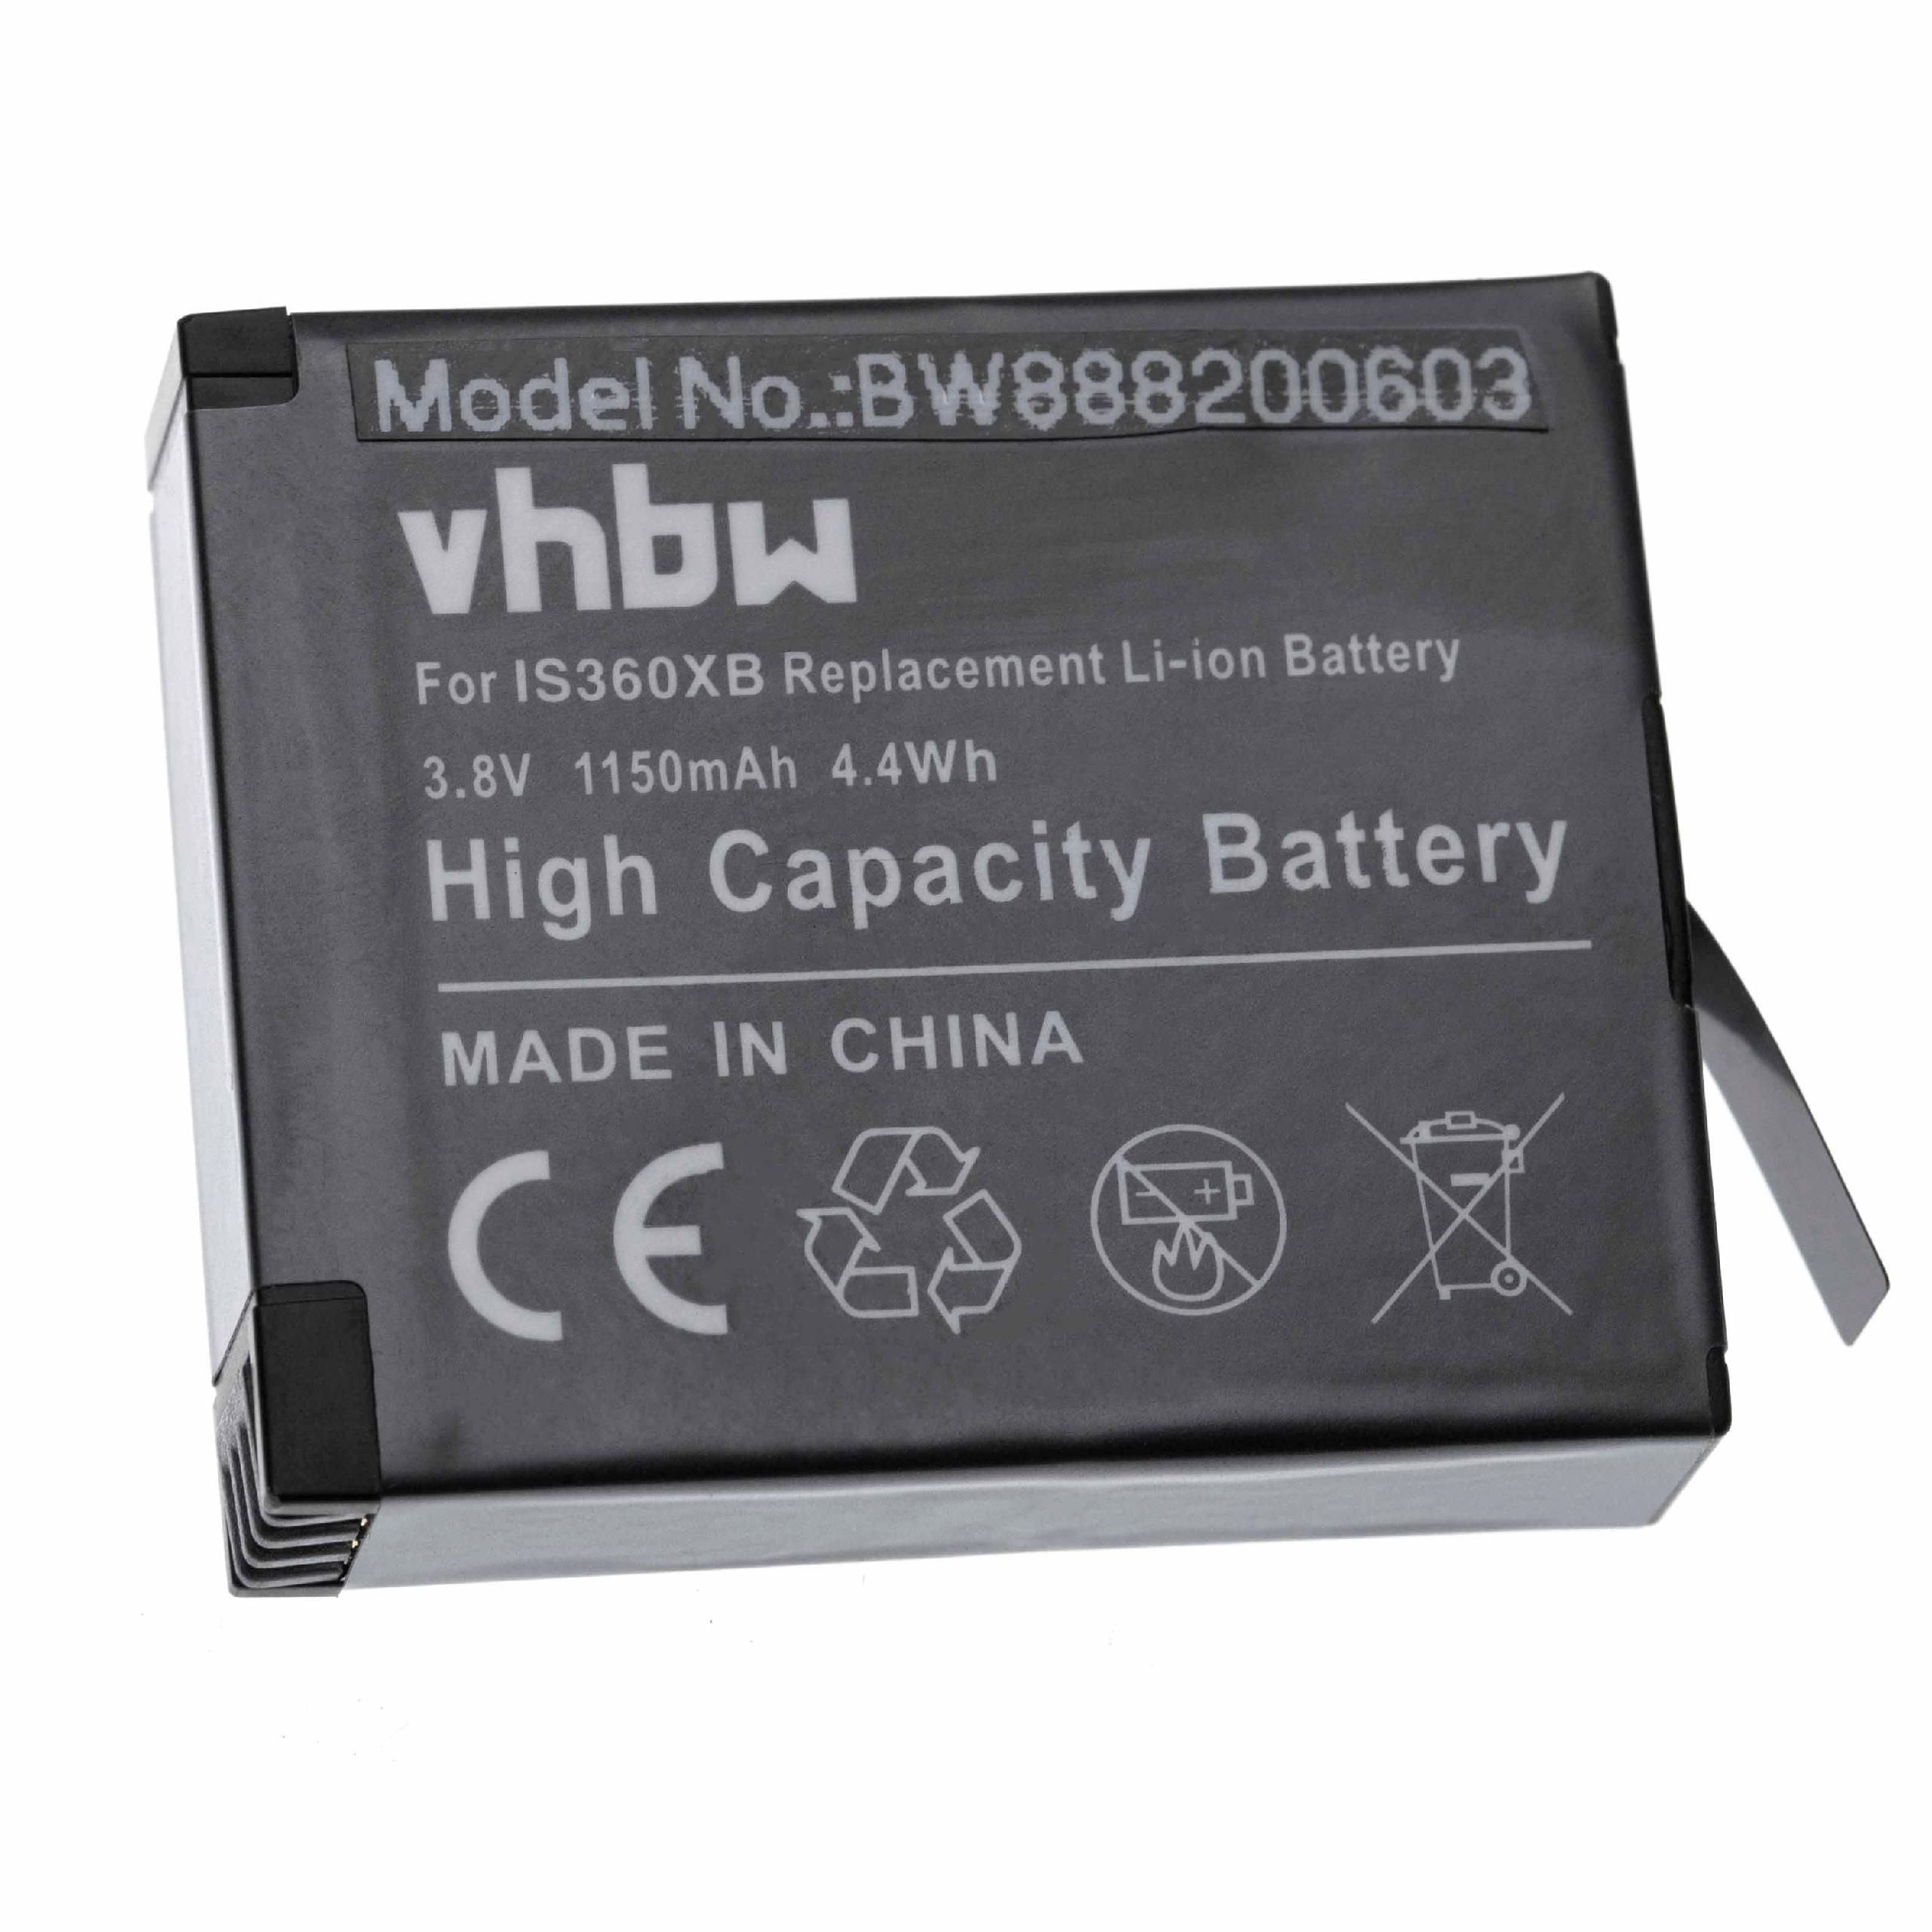 Batterie remplace Insta360 PL903135VT-S01, PL903135VT pour appareil photo - 1150mAh 3,8V Li-ion